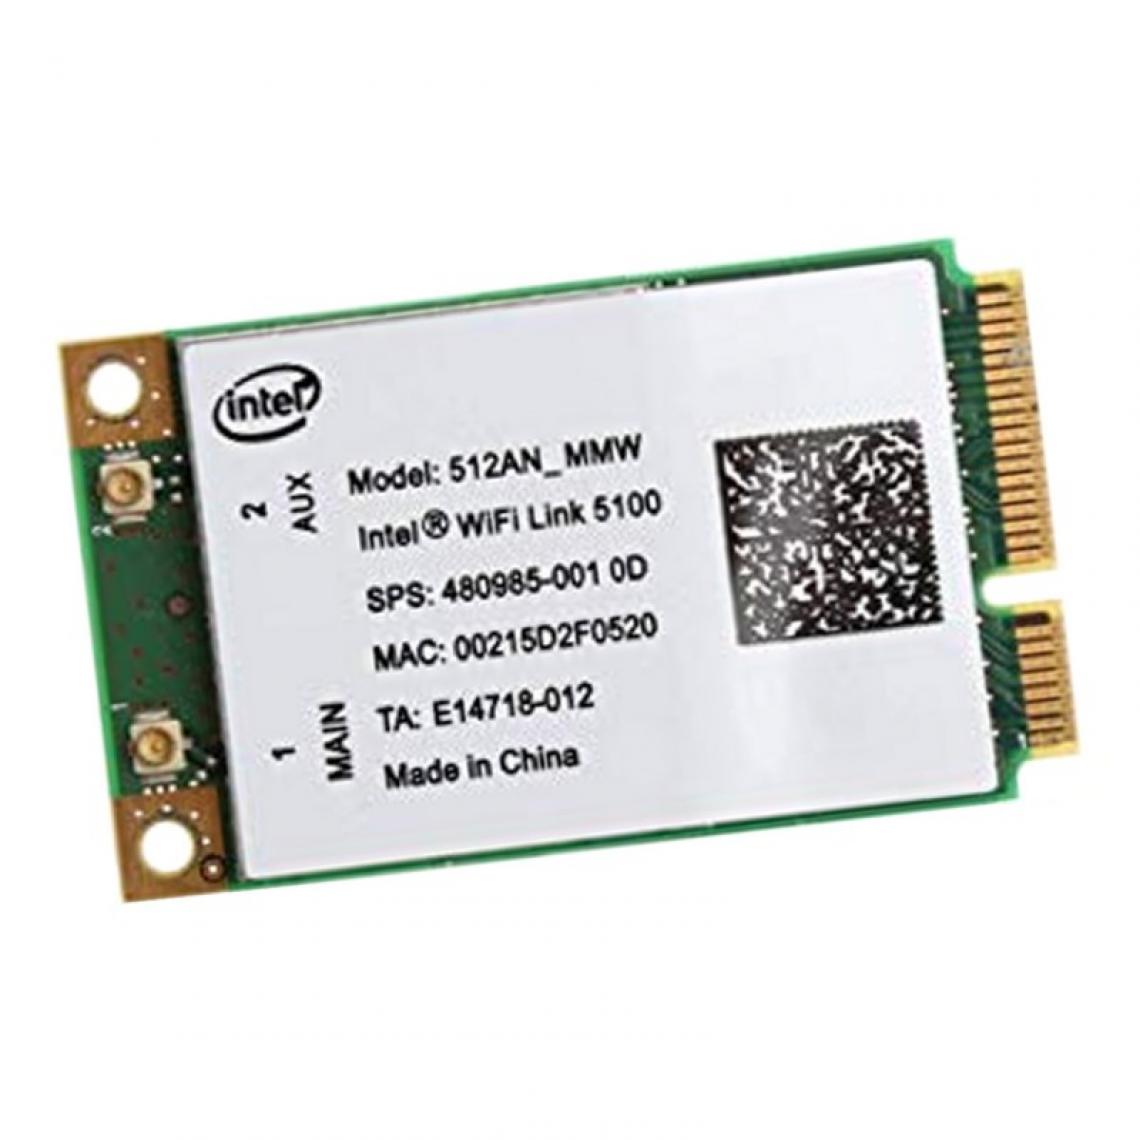 Intel - Mini-Carte Wifi Intel Link 5100 512AN_MMW PD9512ANM PCI-e 802.11a/b/n WLAN - Carte réseau